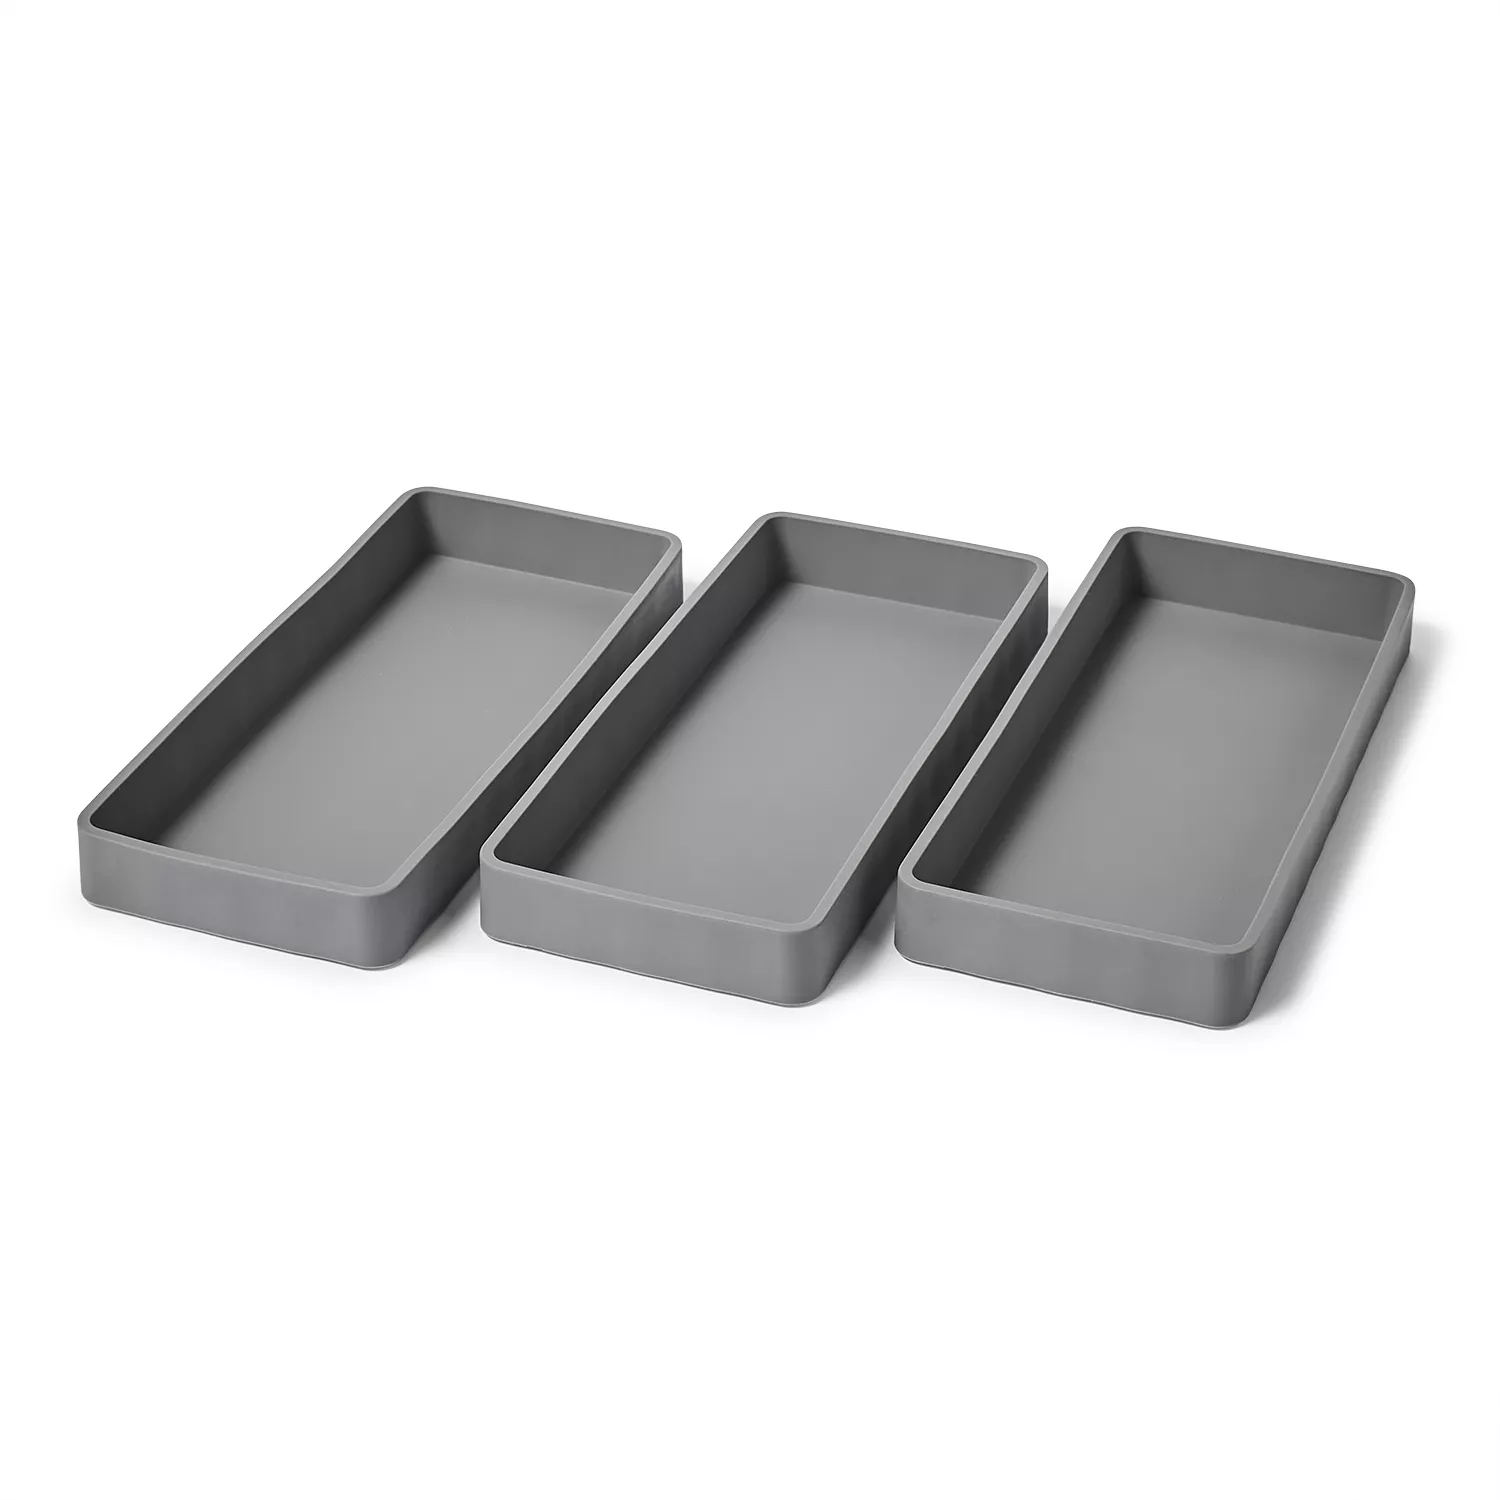 Kuhn Rikon Stainless Steel Pan Divider Set